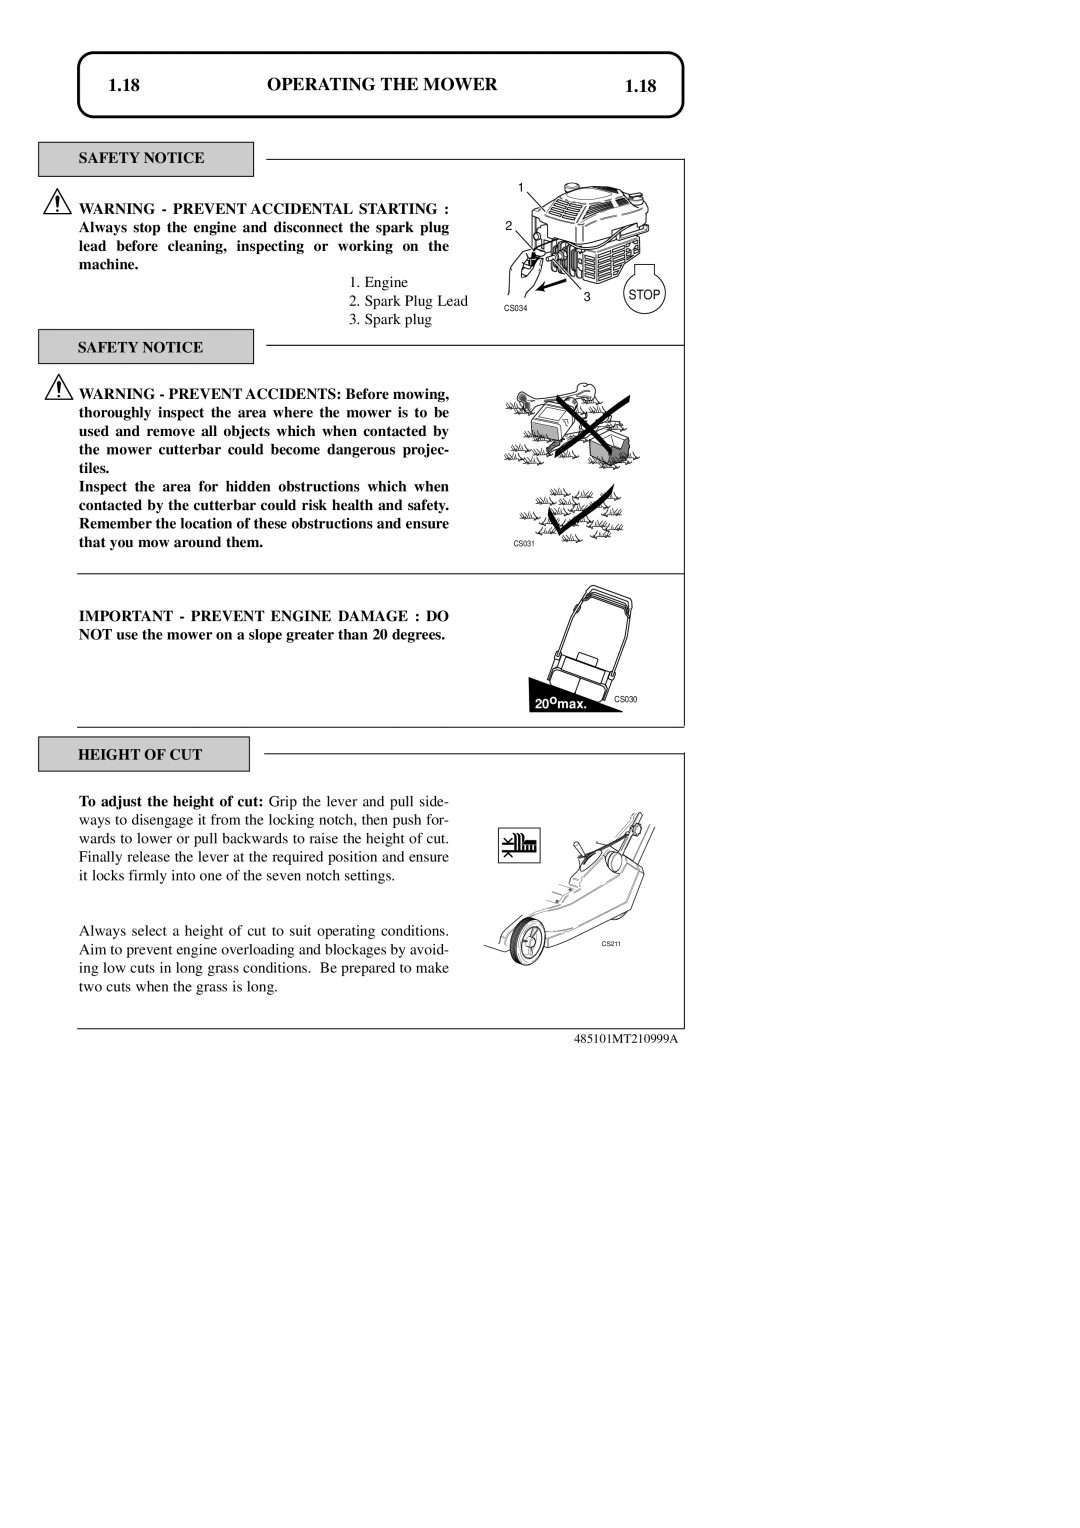 Hayter Mowers 48ST manual 1.18, Operating The Mower, 20omax. CS030, CS031 